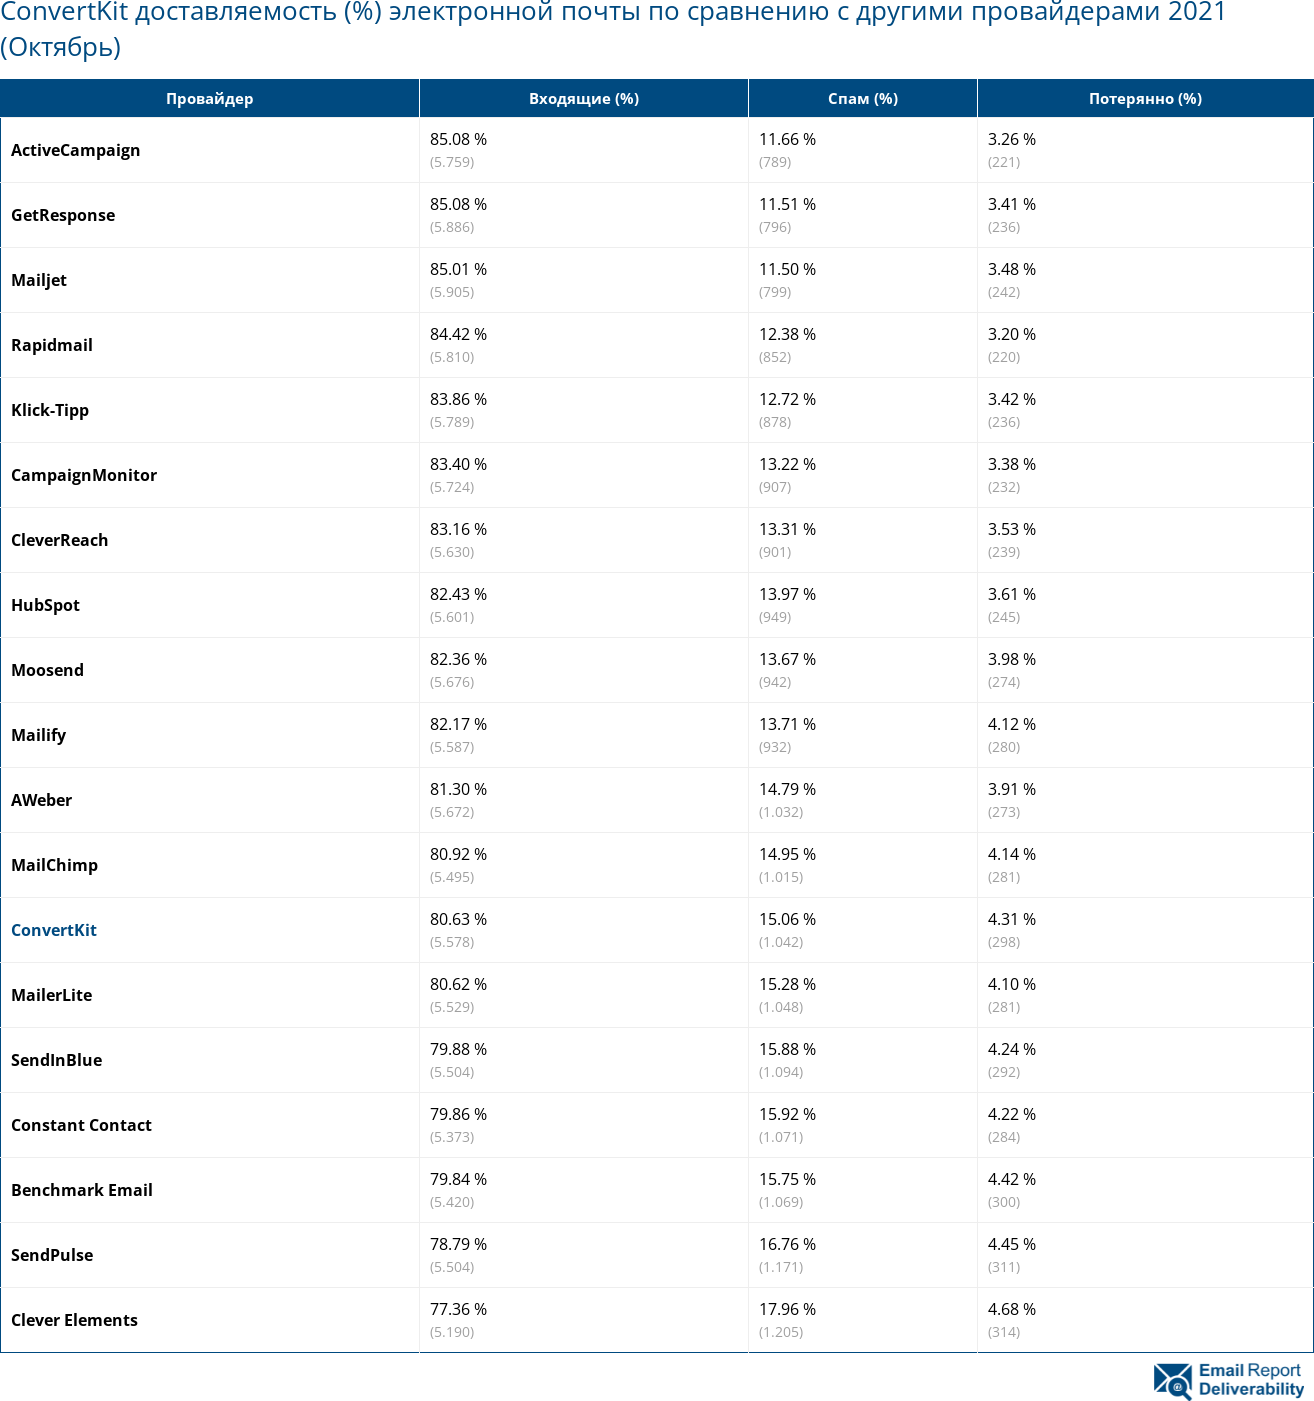 ConvertKit доставляемость (%) электронной почты по сравнению с другими провайдерами 2021 (Октябрь)